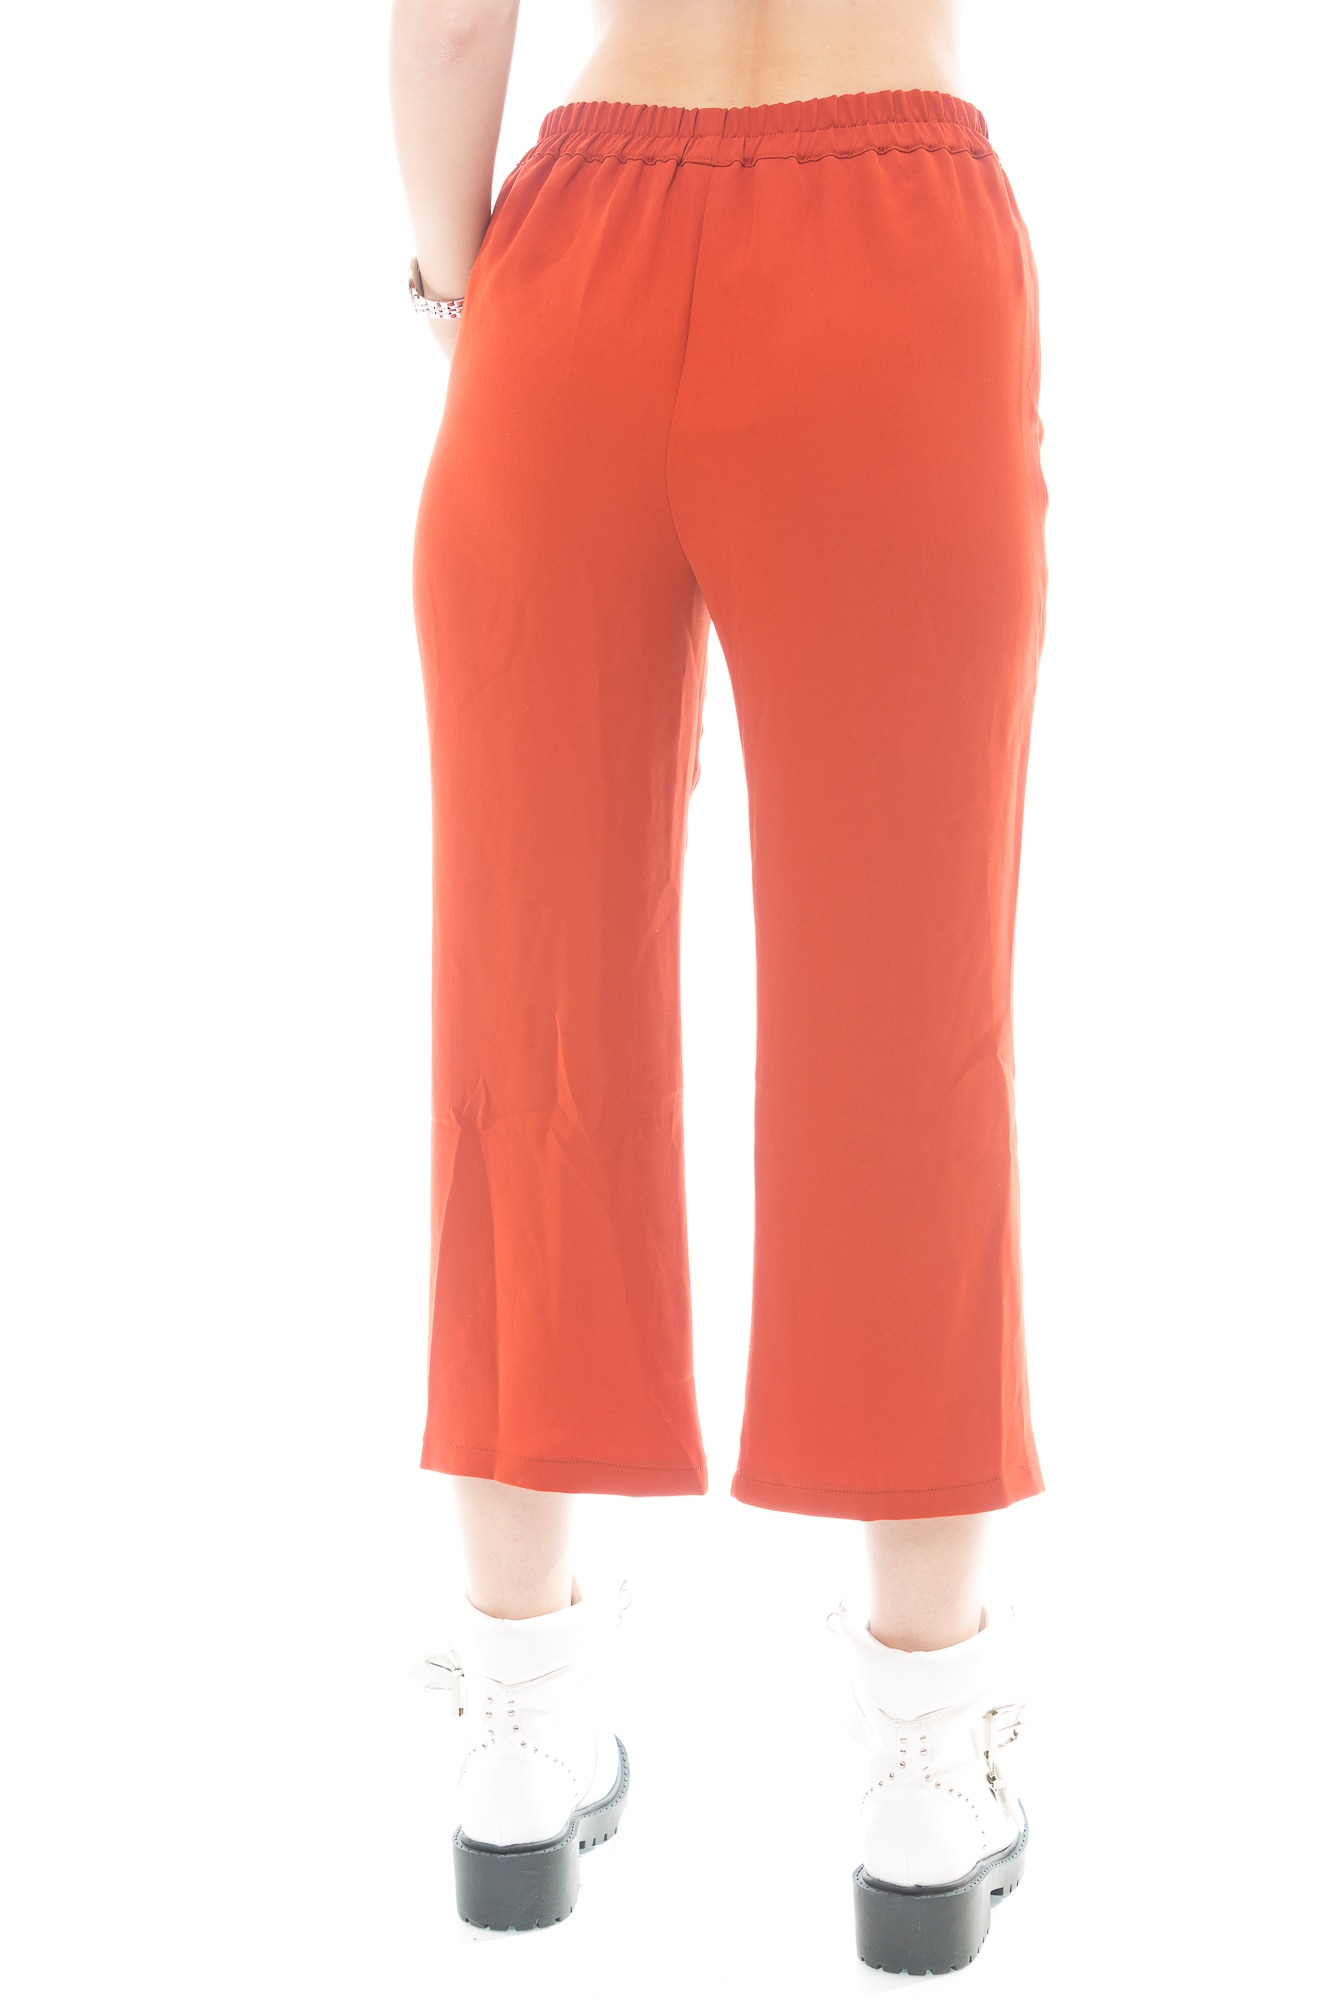 Dusty deliver profile Pantaloni dama Mango, caramiziu, lungime 3/4, marimea XS - eMAG.ro